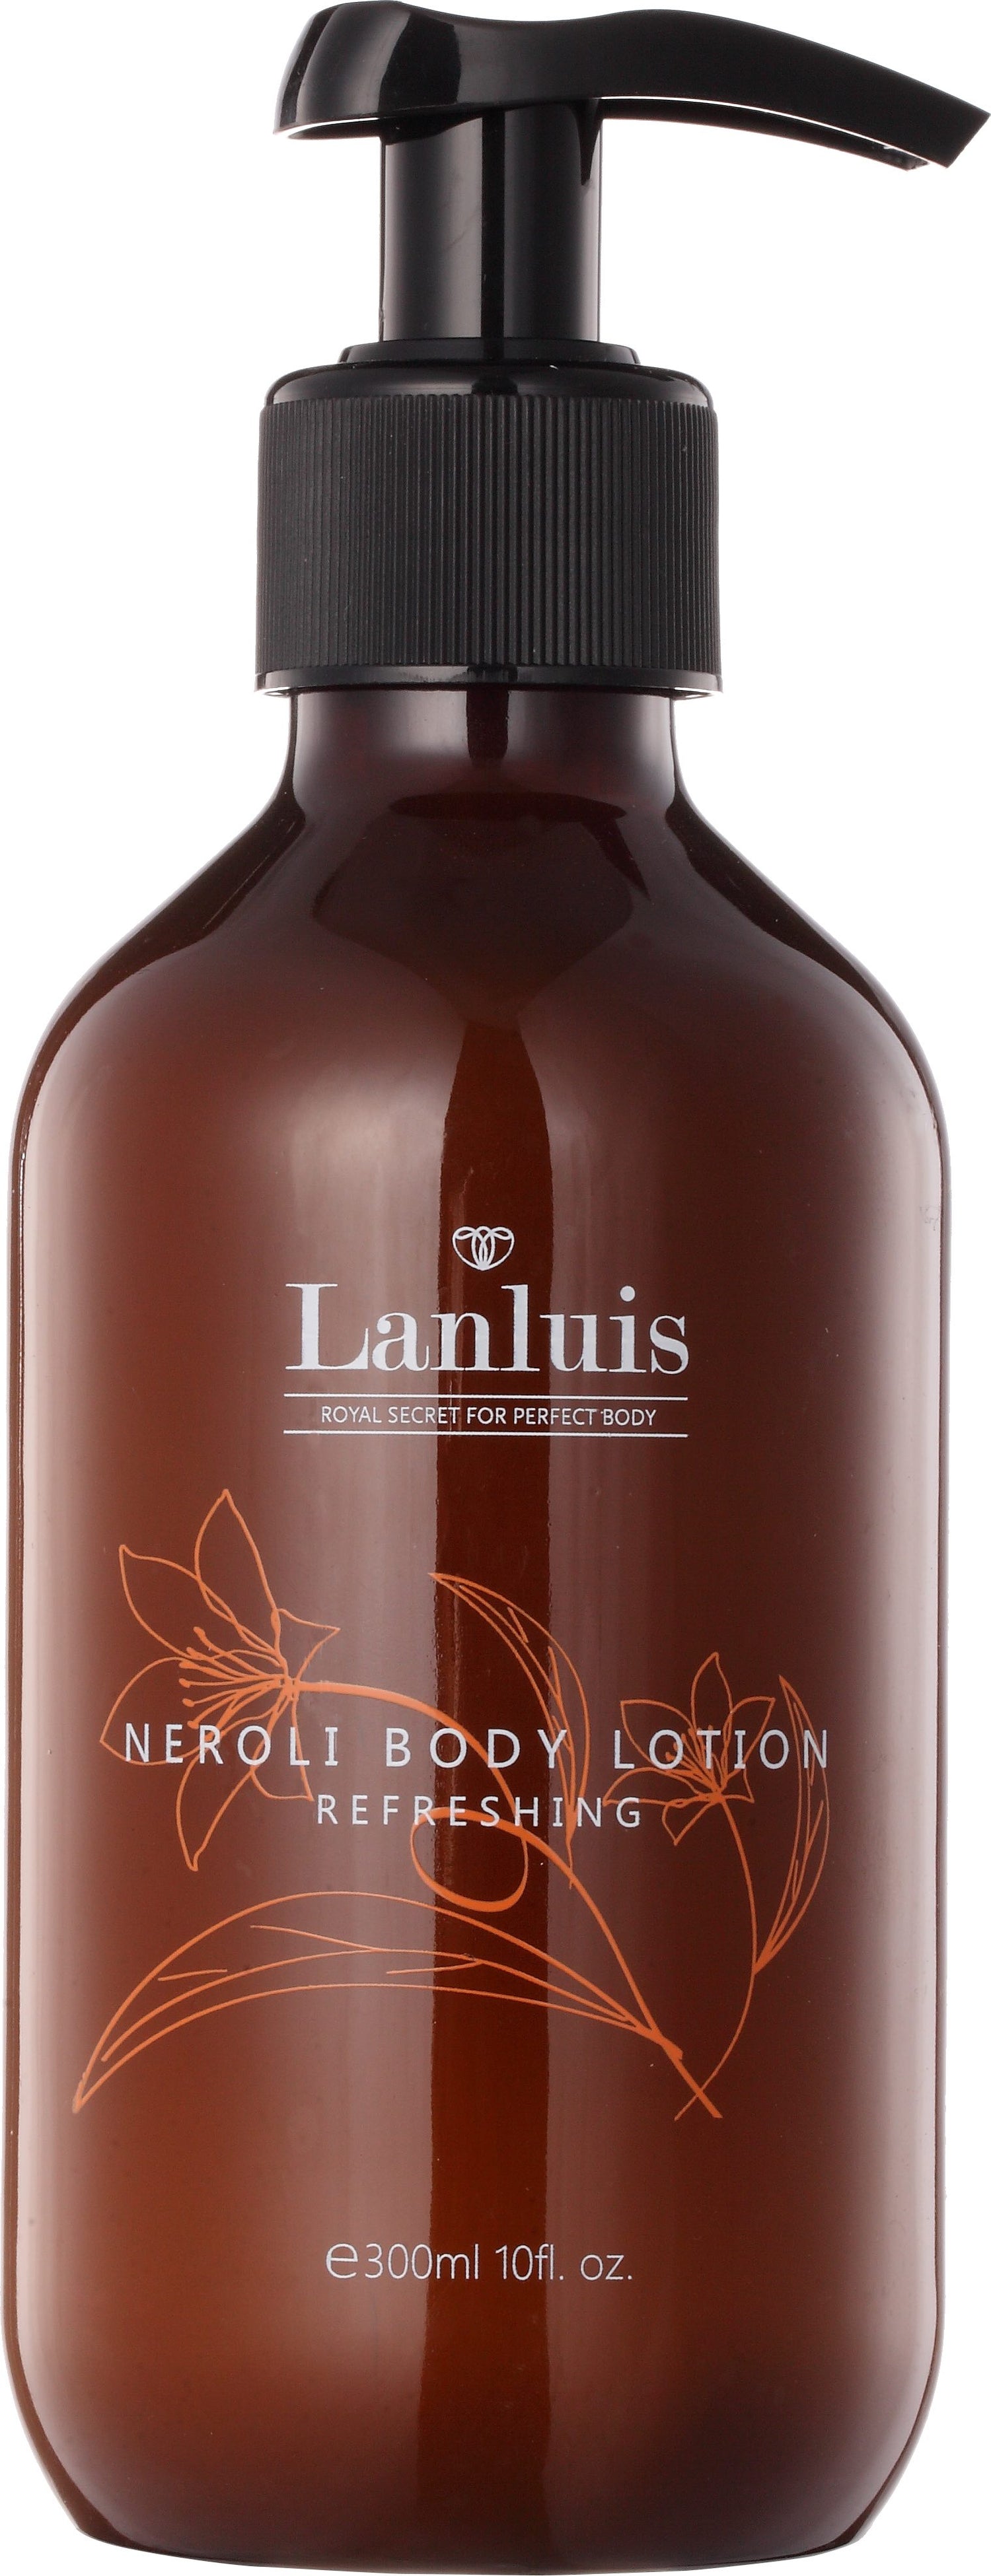 Neroli Body Lotion - Refreshing